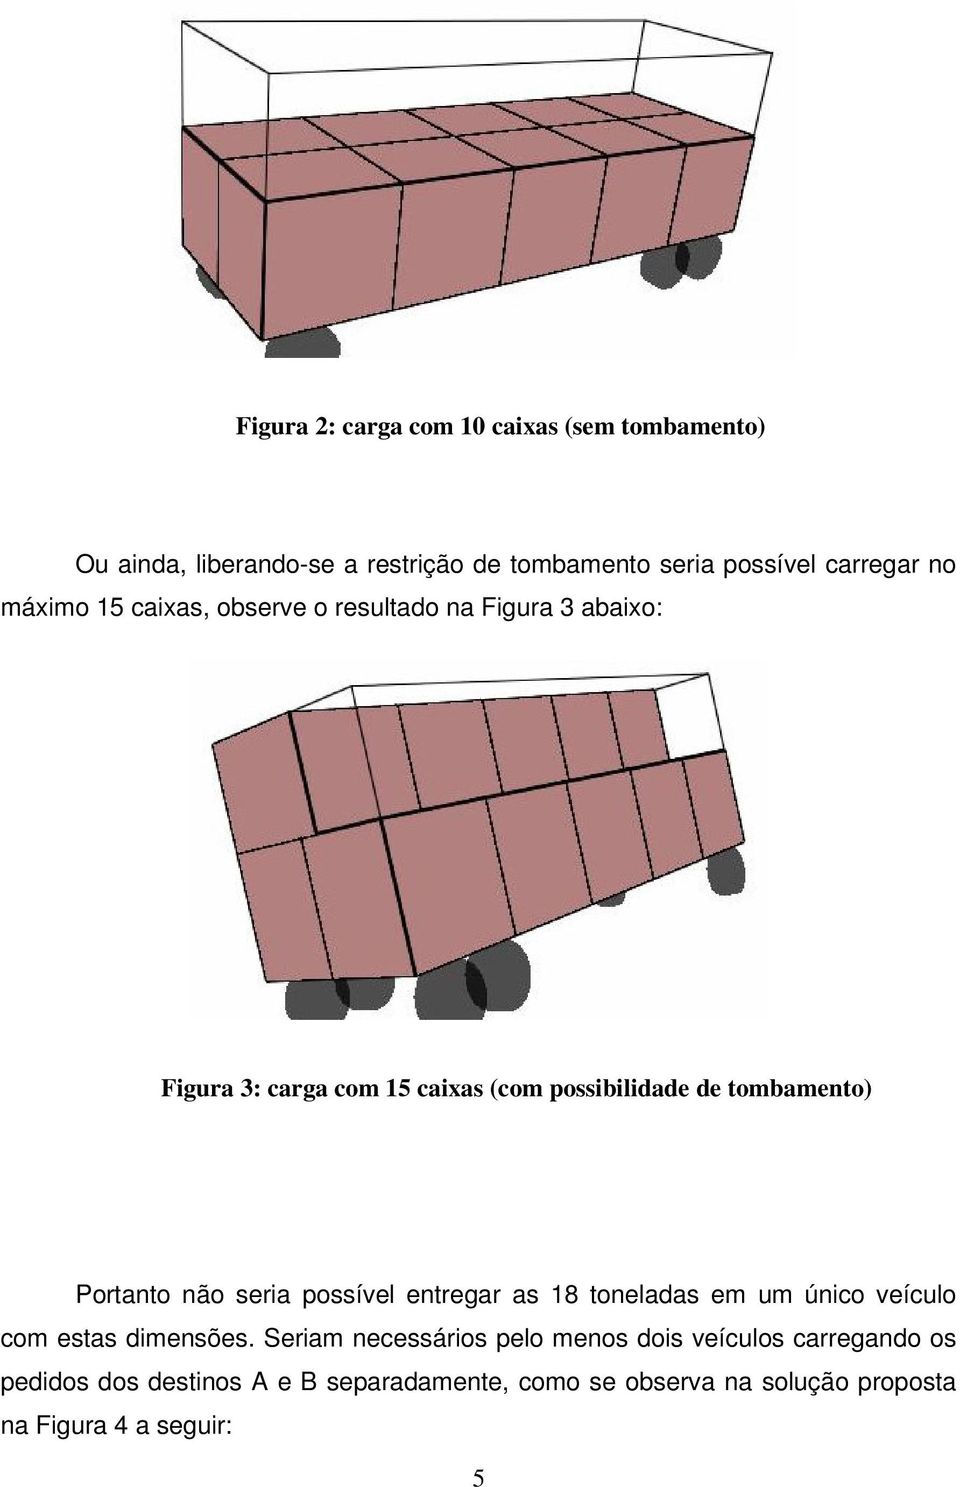 Portanto não seria possível entregar as 18 toneladas em um único veículo com estas dimensões.